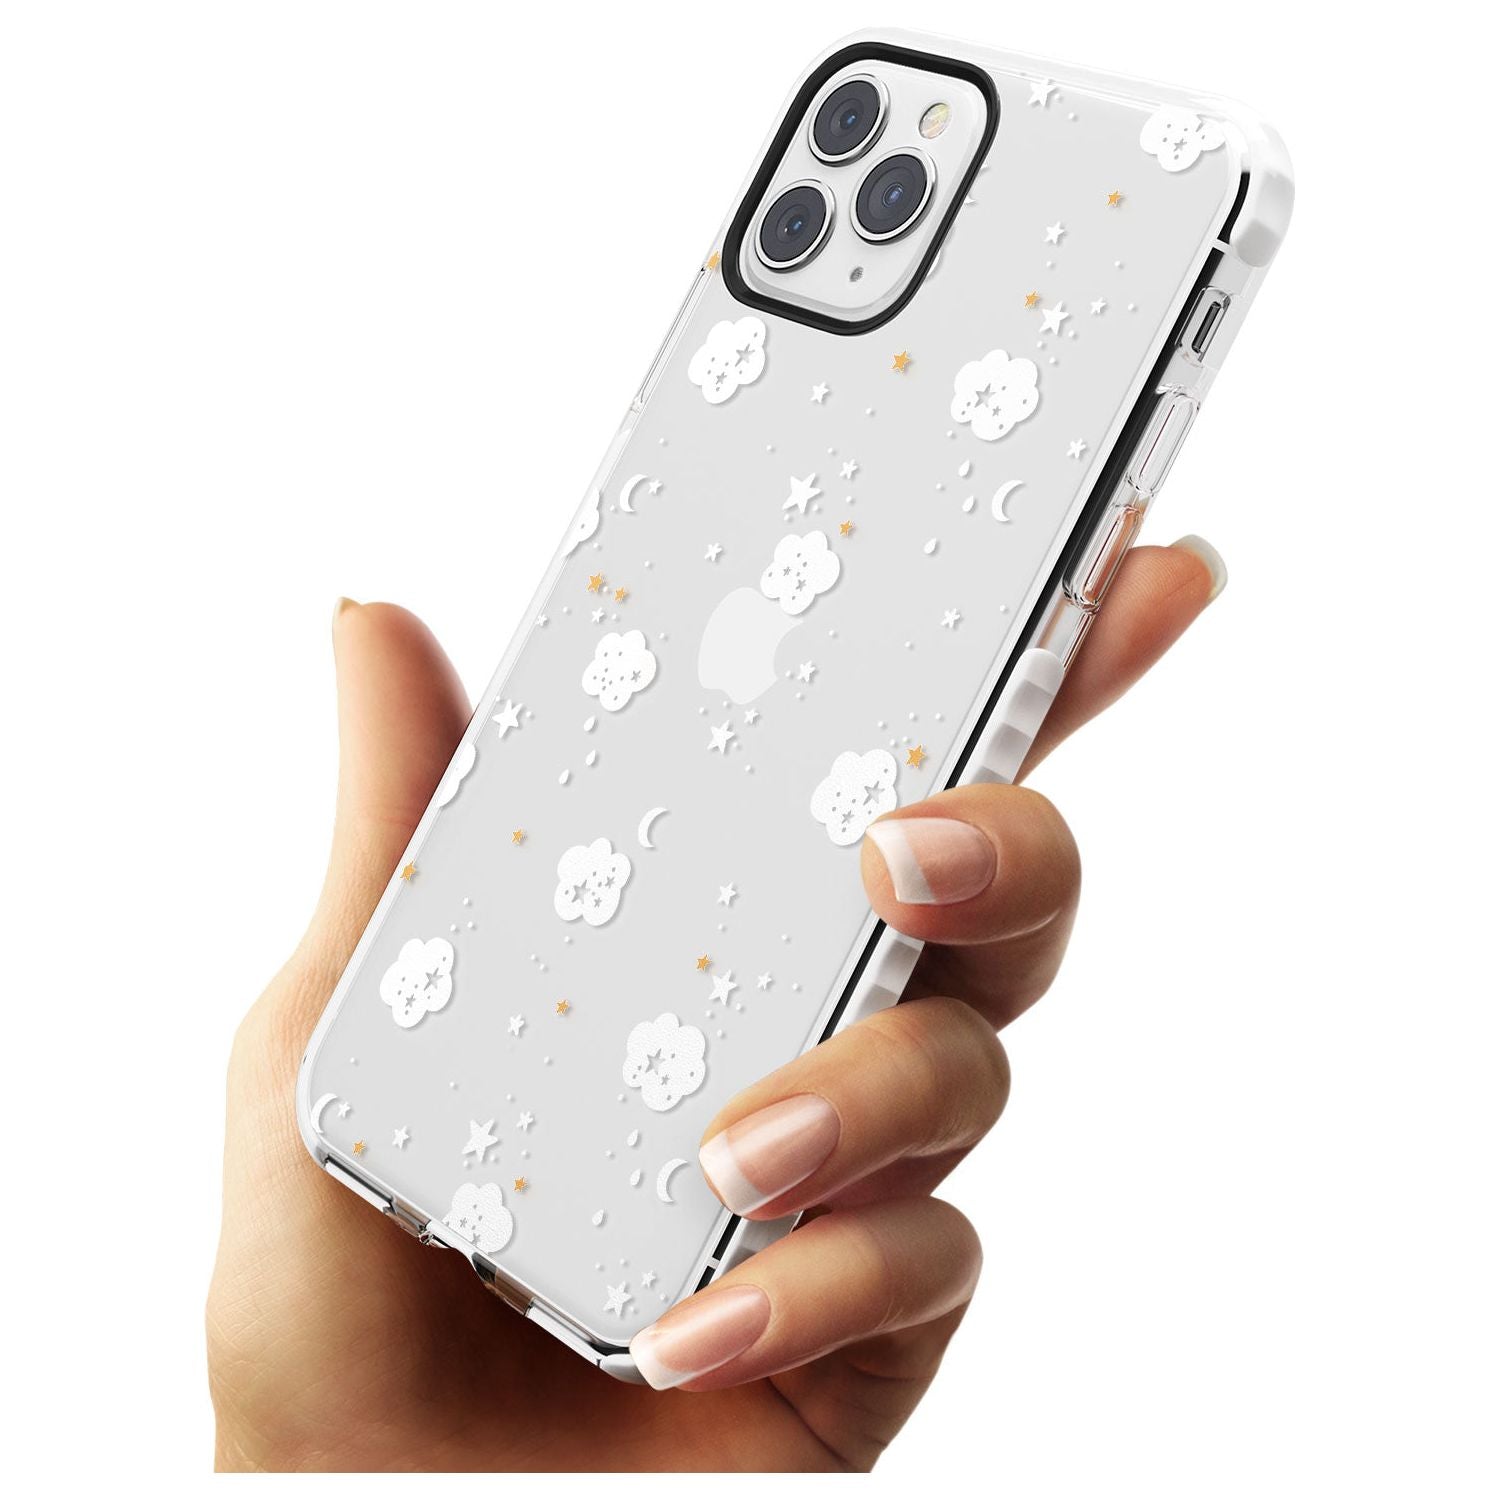 Stars & Clouds Slim TPU Phone Case for iPhone 11 Pro Max